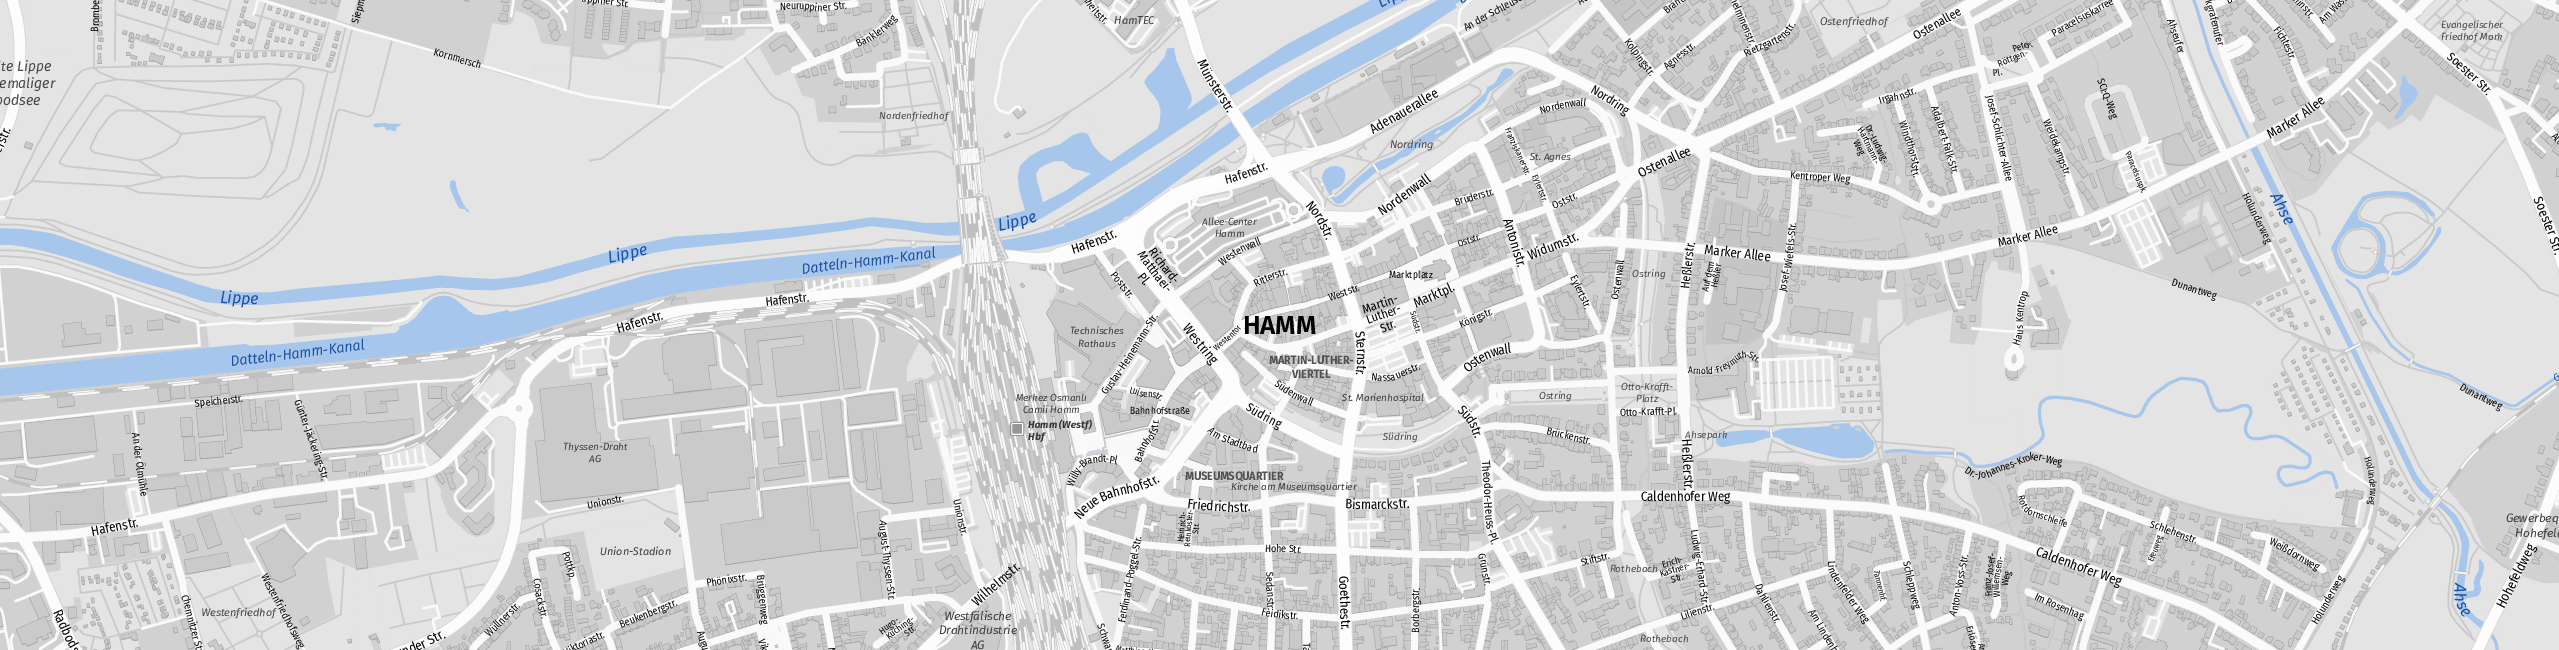 Stadtplan Hamm zum Downloaden.